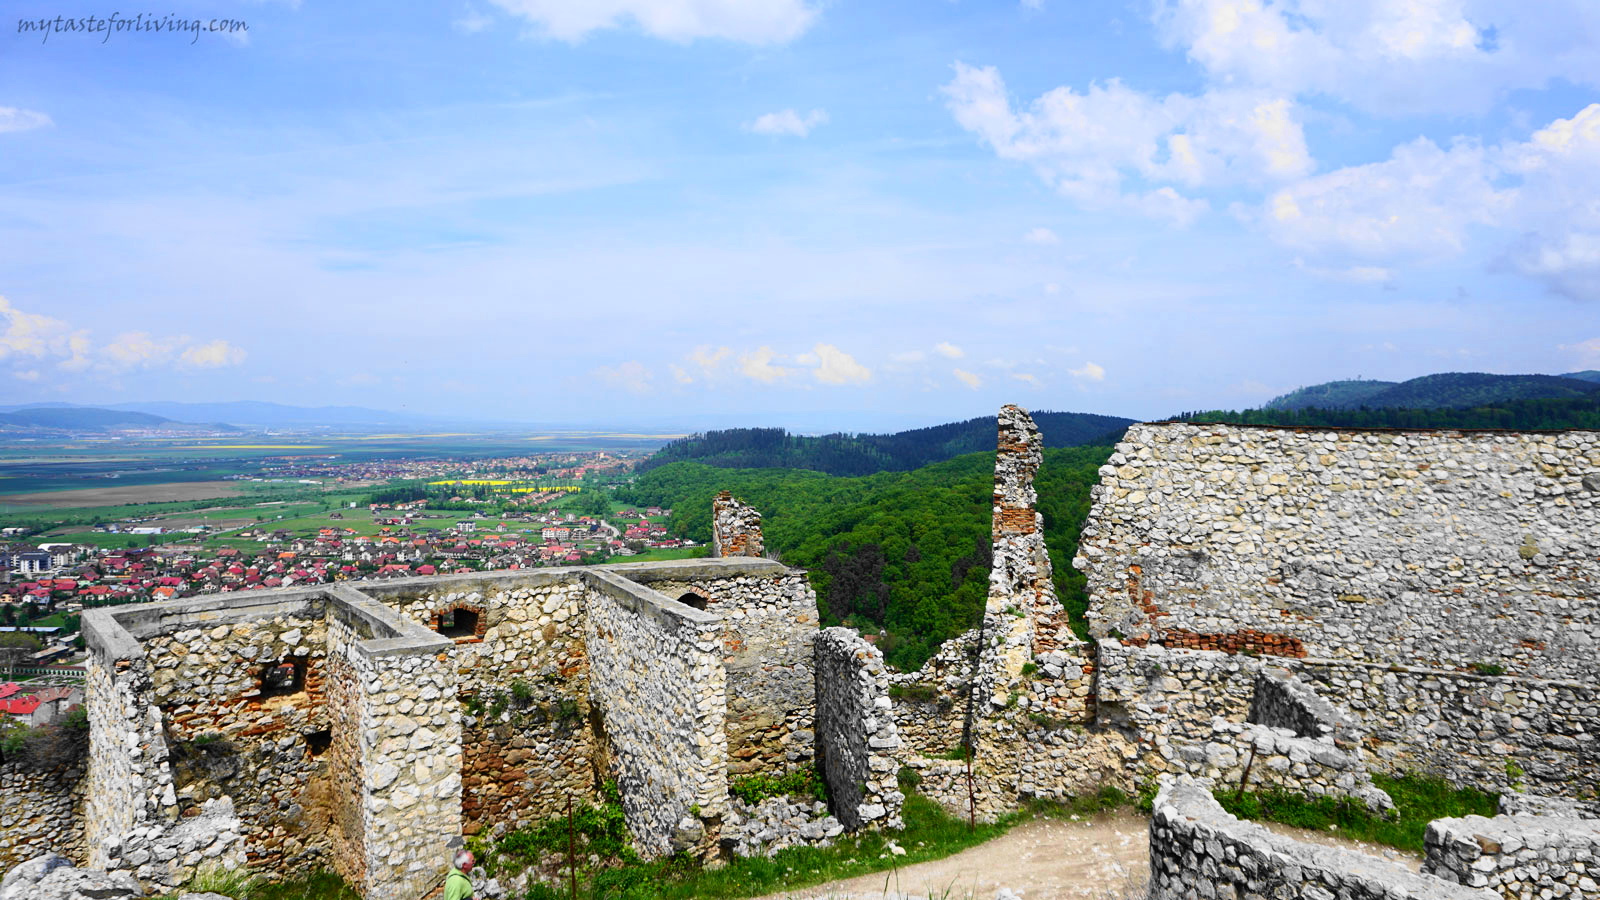 Разположенa близо до Брашов, на 200 метра над град Ръшнов, на върха на скалист хълм, крепостта Ръшнов е една от най-посещаваните средновековни забележителности в Румъния. 